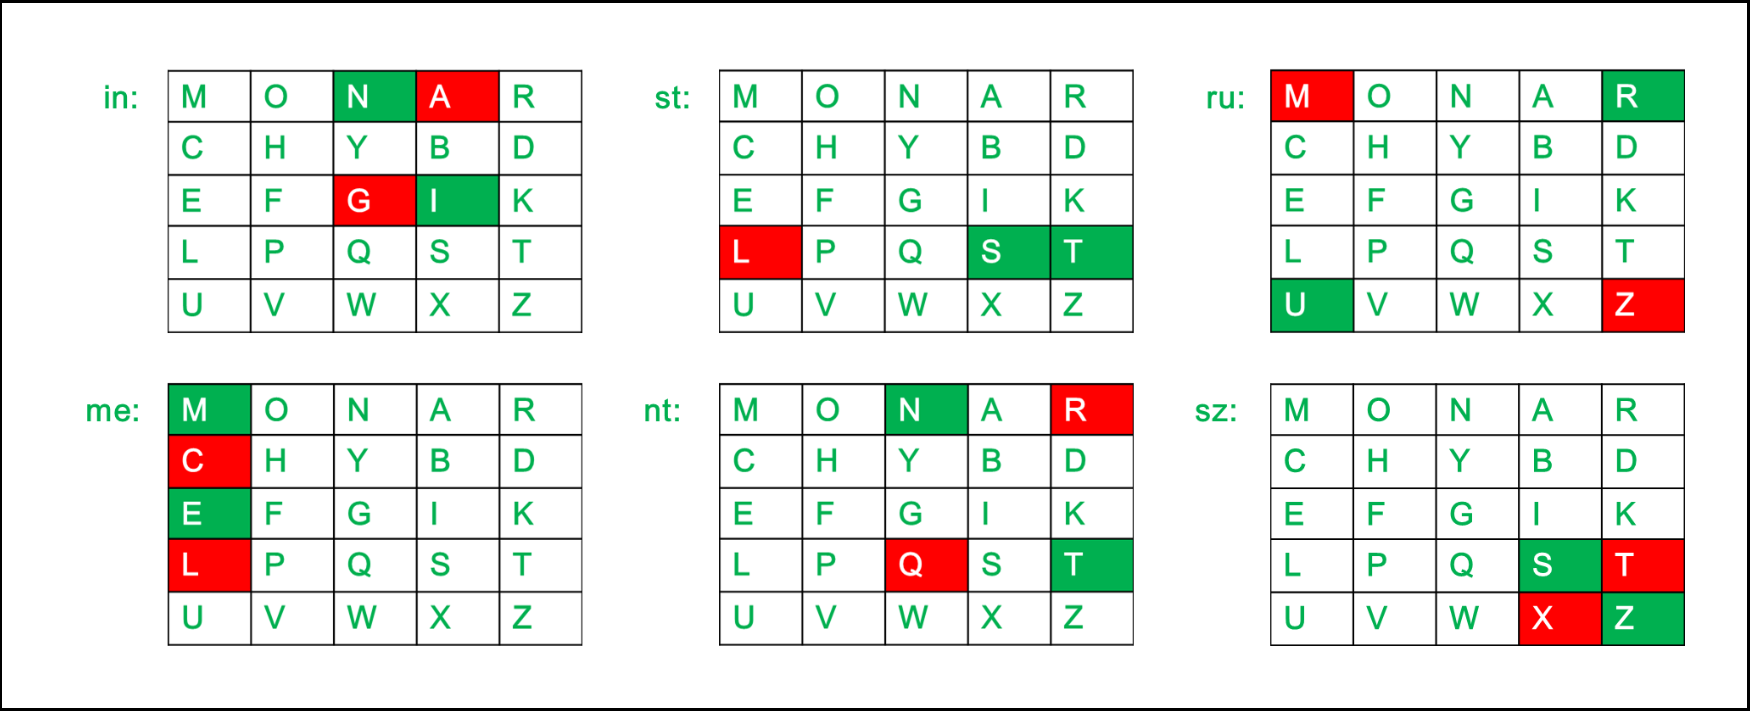 Playfair cipher program in c easy